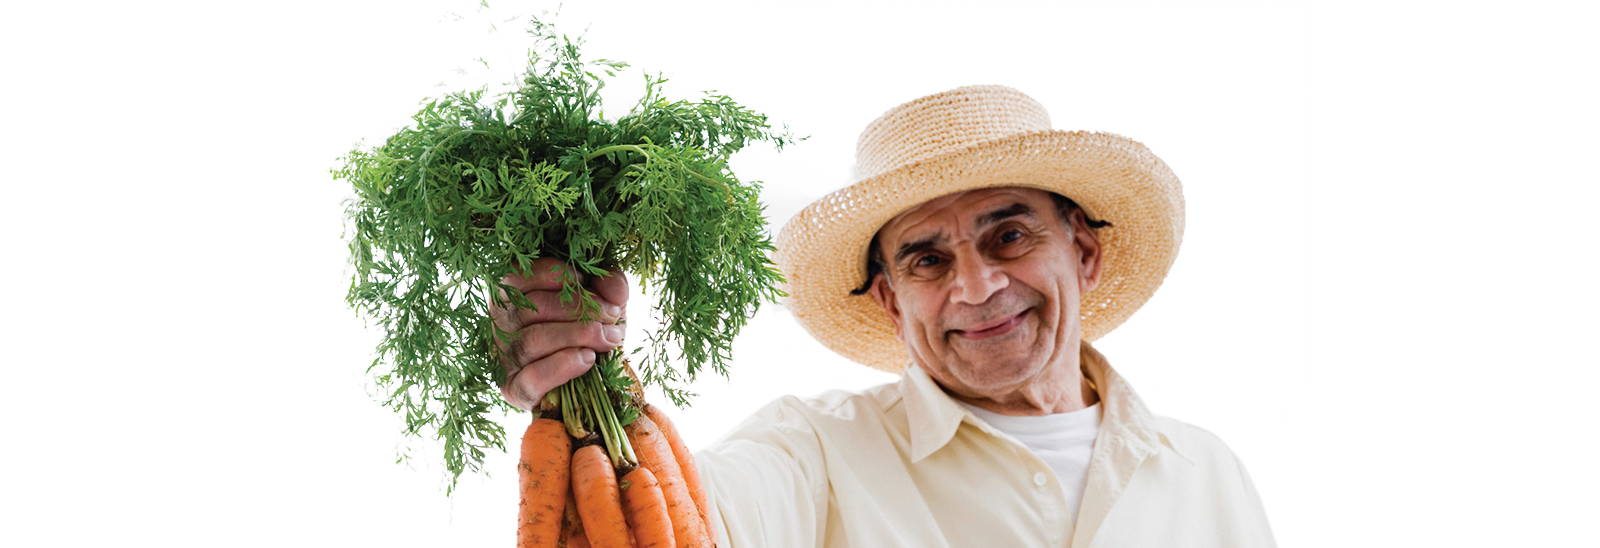 Un señor sonriente sosteniendo un montón de zanahorias frescas 